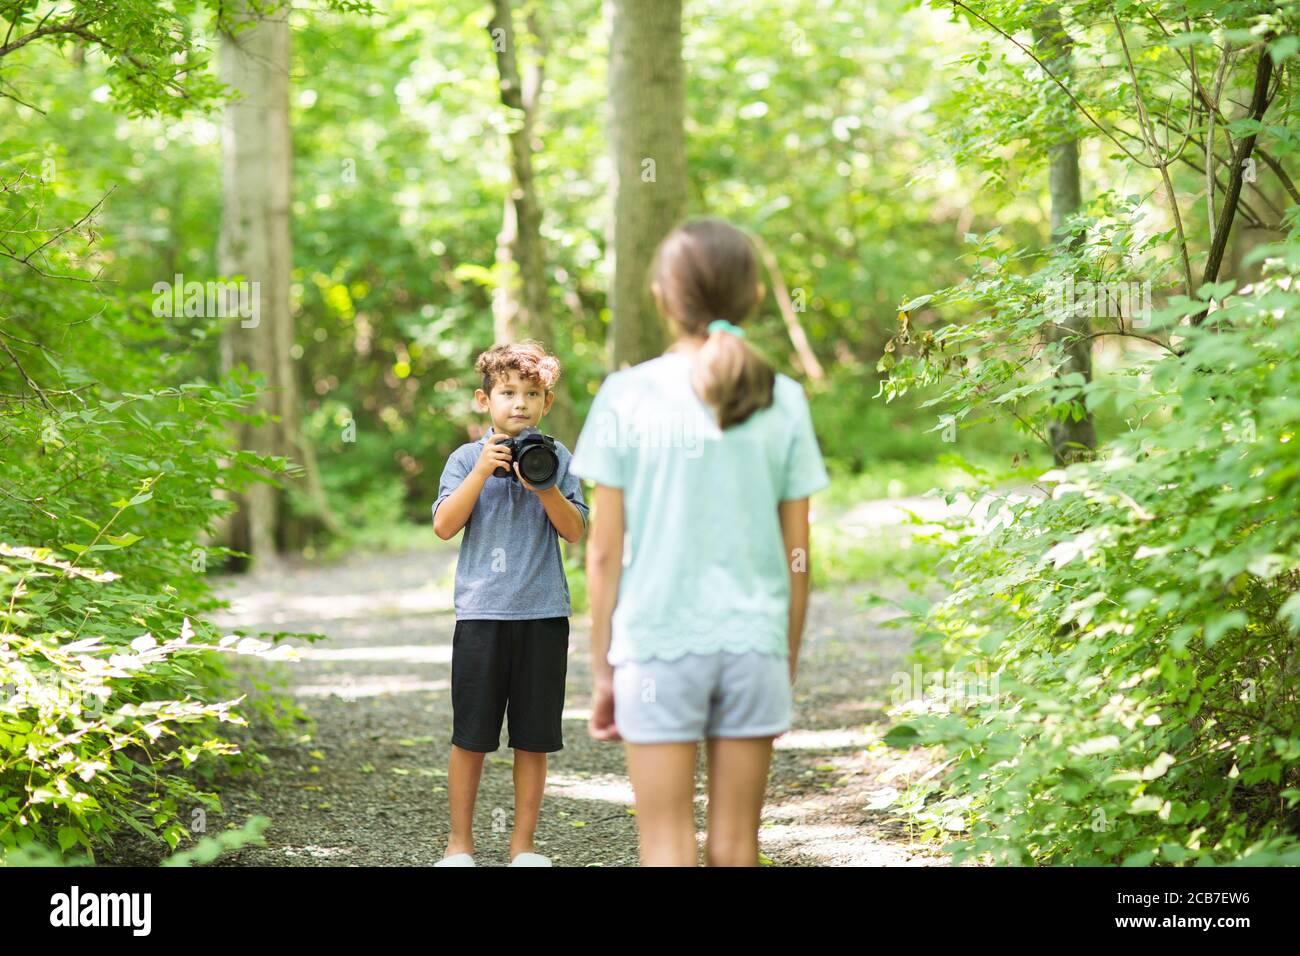 Jeune garçon prenant la photo de sa sœur dans la forêt. Banque D'Images